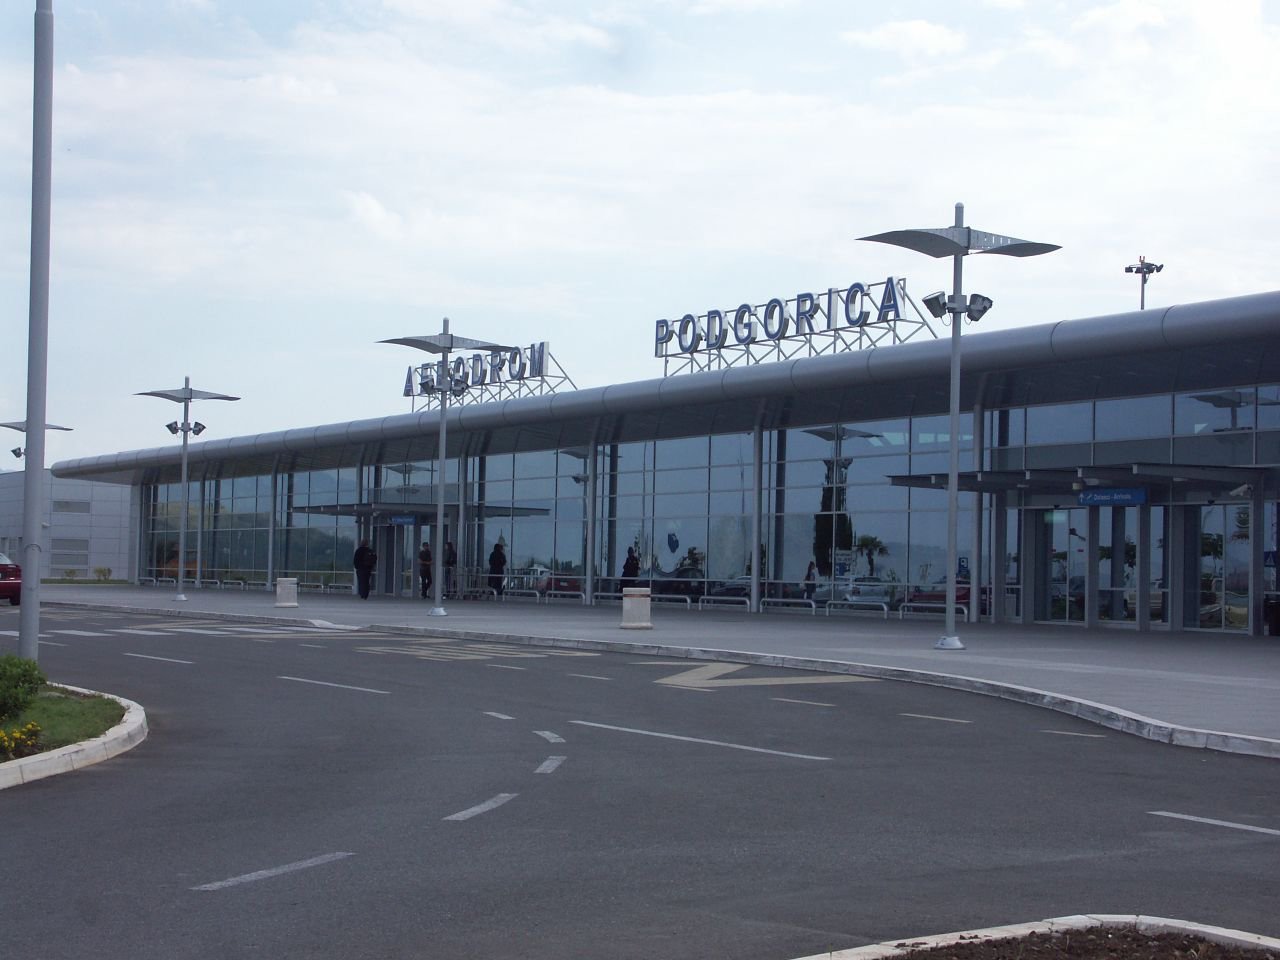 Международные аэропорты черногории: список, в каком городе находятся